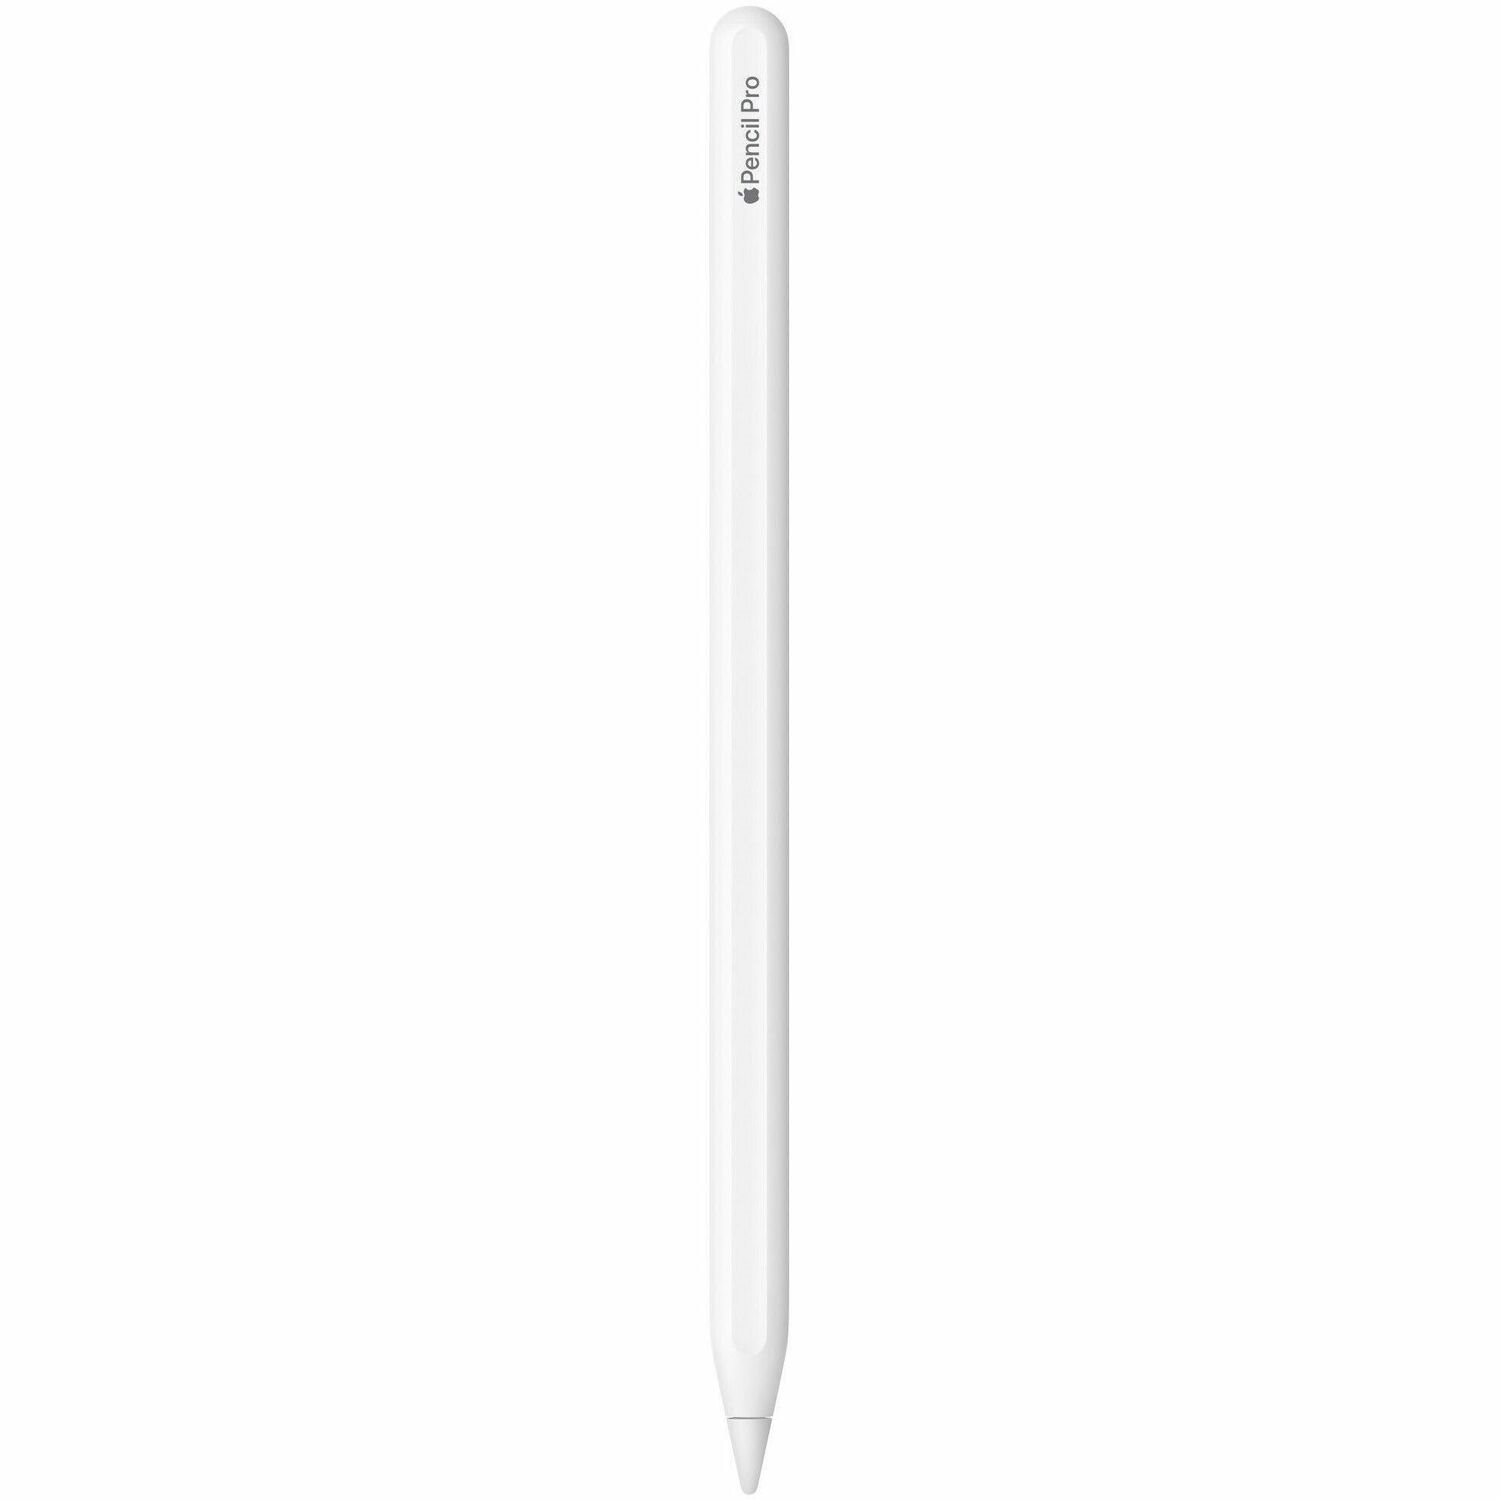 Apple Pencil Pro Bluetooth Stylus